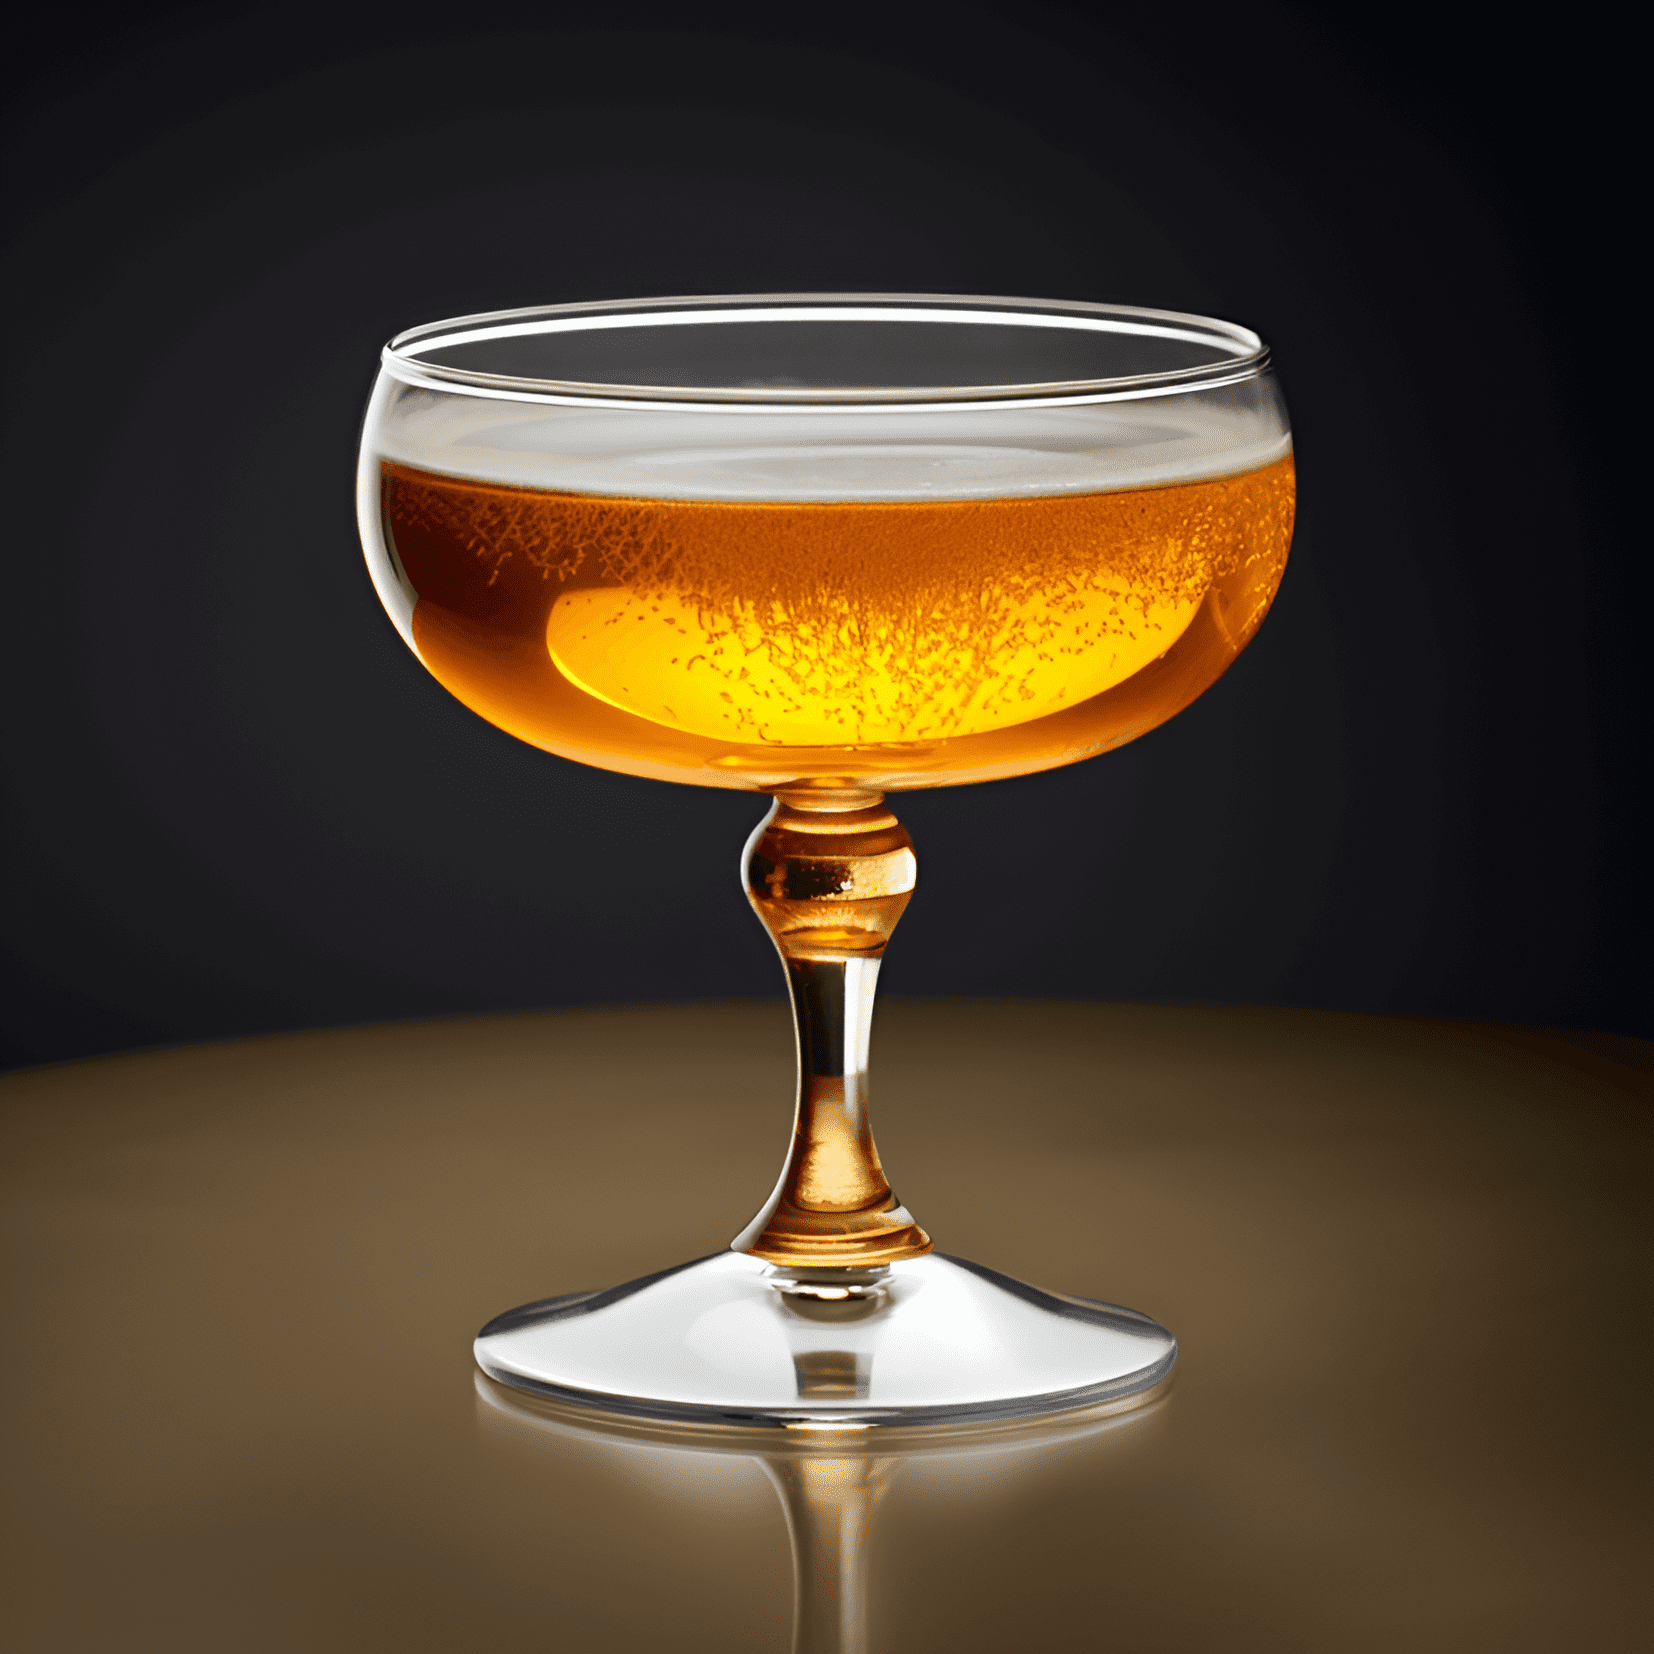 Prince of Wales Cóctel Receta - El cóctel Prince of Wales es una bebida bien equilibrada, compleja y refrescante. Tiene un sabor ligeramente dulce y afrutado, con un toque de amargor de los bitters de Angostura. El champán agrega un toque de efervescencia y ligereza a la bebida.